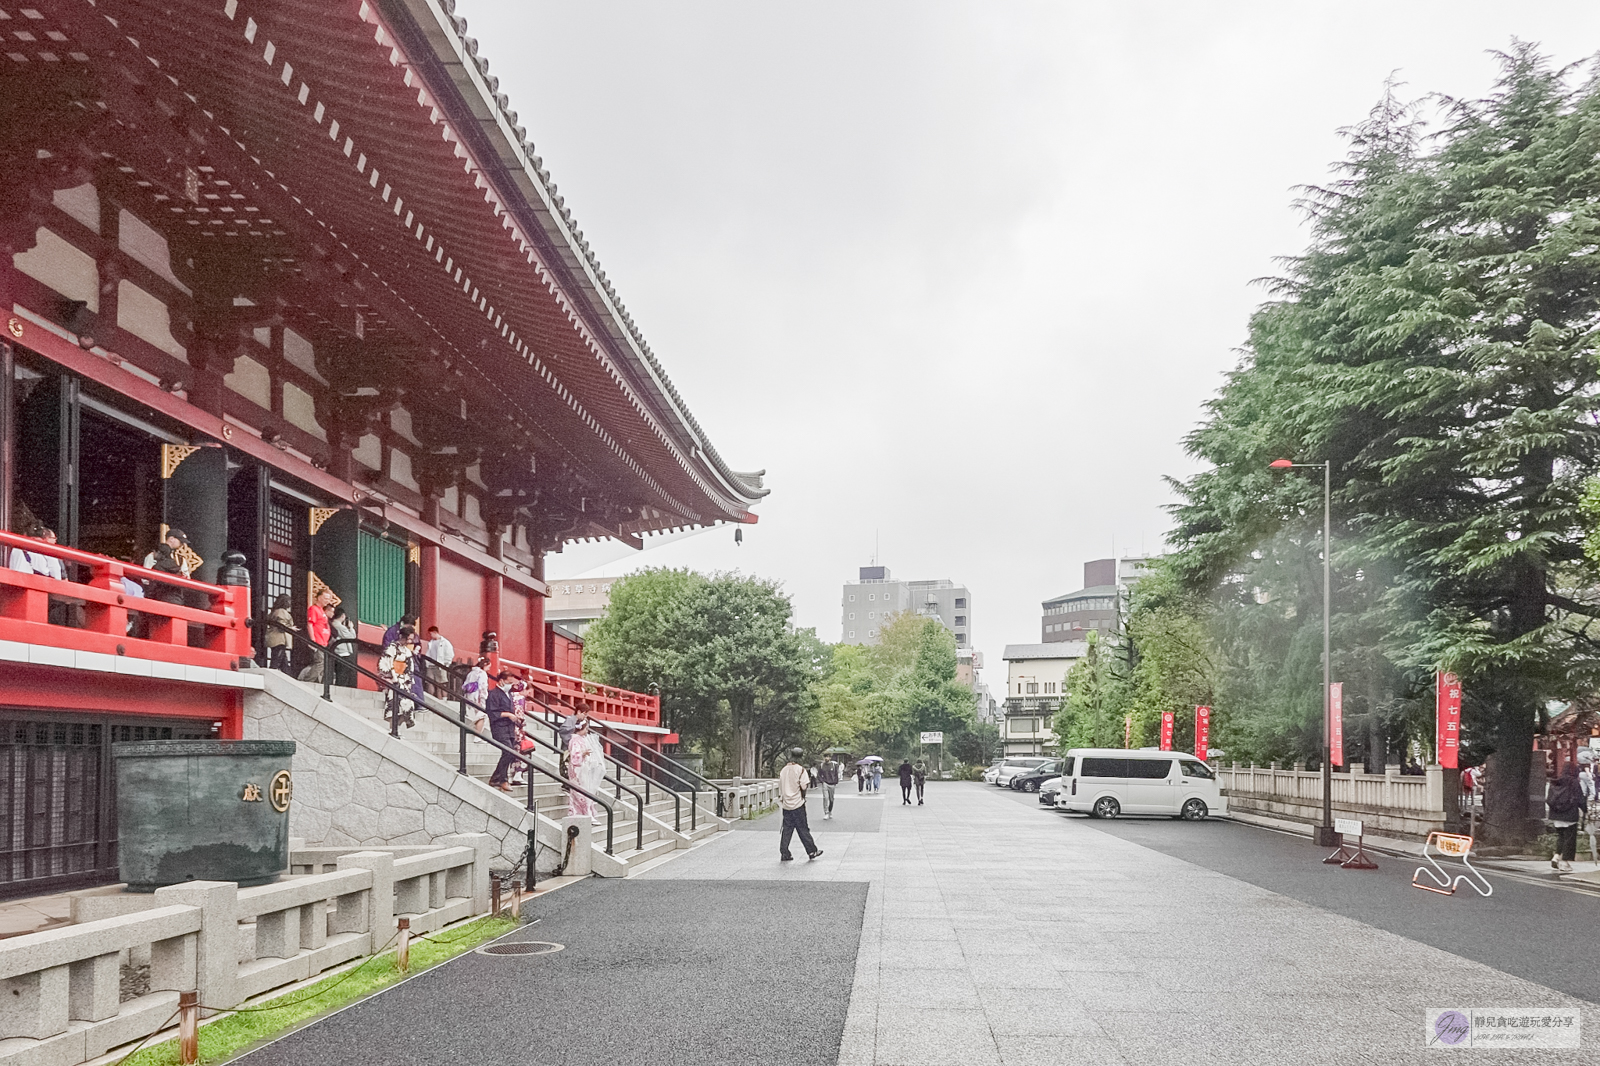 日本東京景點-淺草寺 雷門-東京最古老的寺院！擁有千年歷史的東京必訪景點、美食，水上巴士飽覽整個城鎮風景 @靜兒貪吃遊玩愛分享